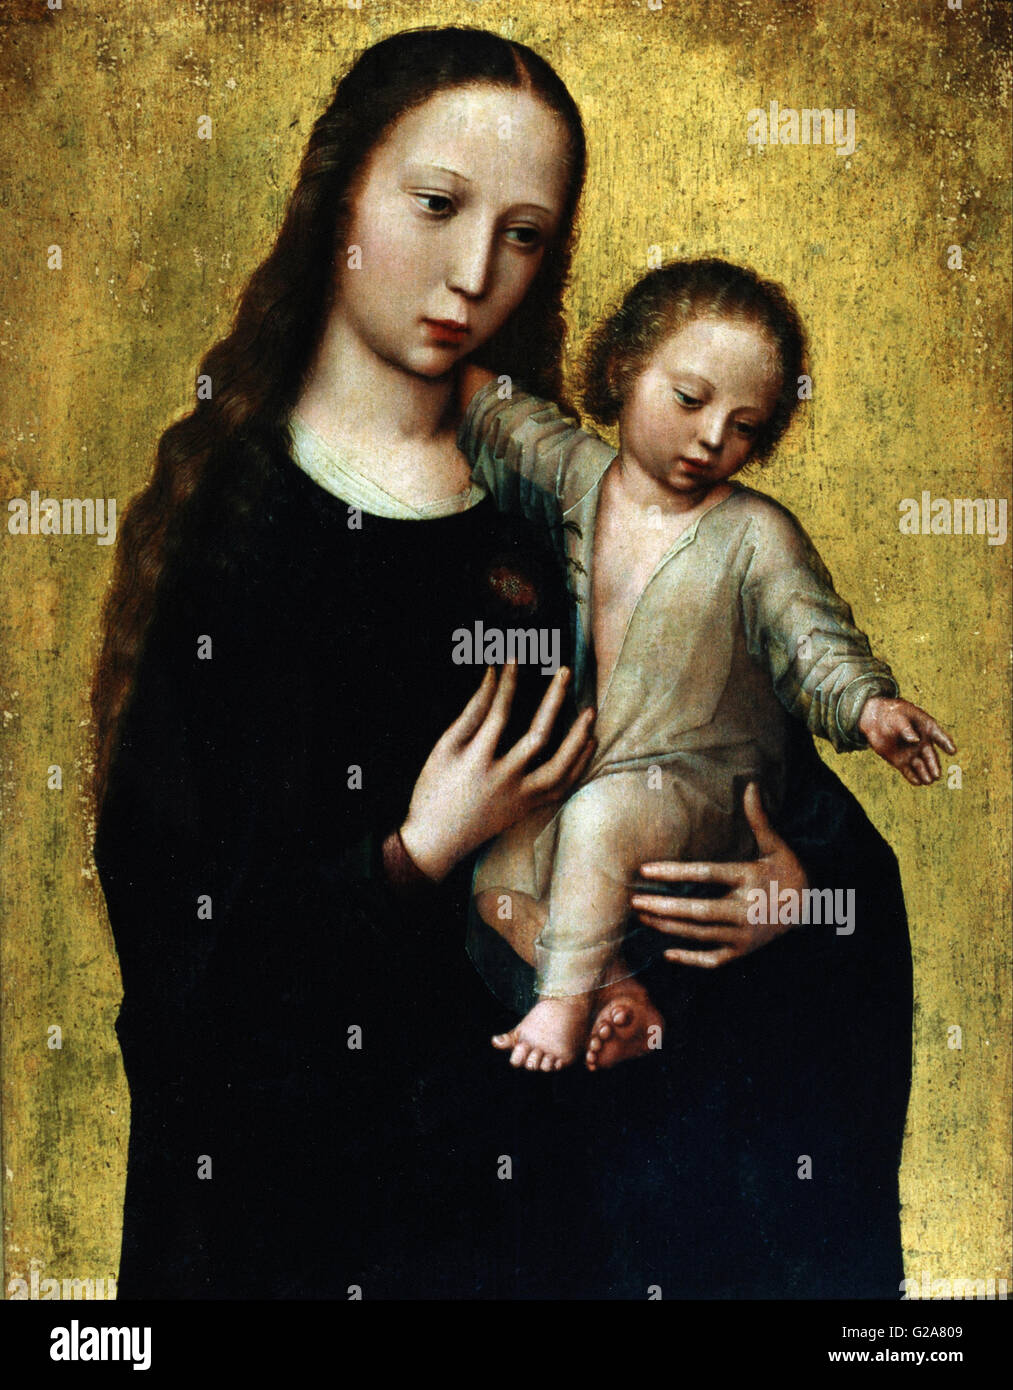 Benson, Ambrosius - La Vierge Marie avec l'Enfant Jésus dans une chemise - Museo Lázaro Galdiano Banque D'Images